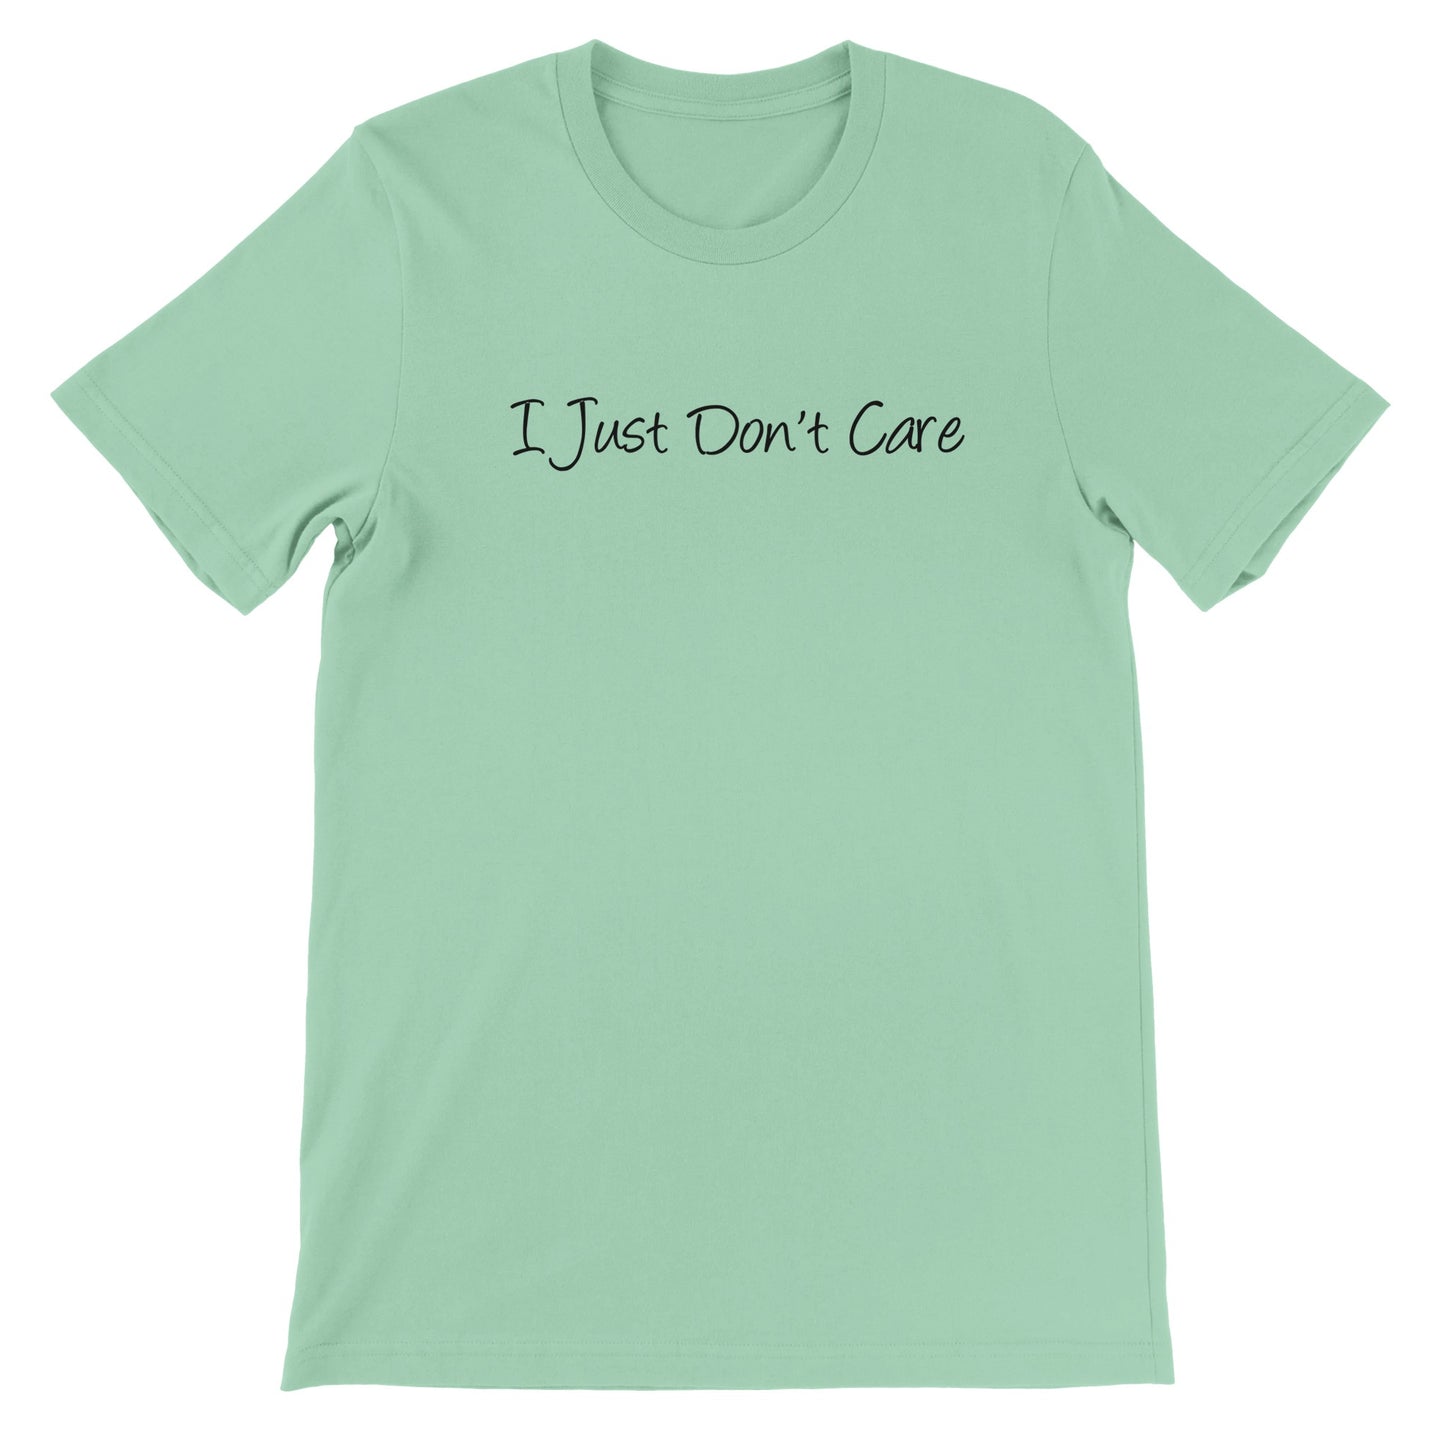 I Just Don't Care - Premium Unisex Crewneck T-shirt